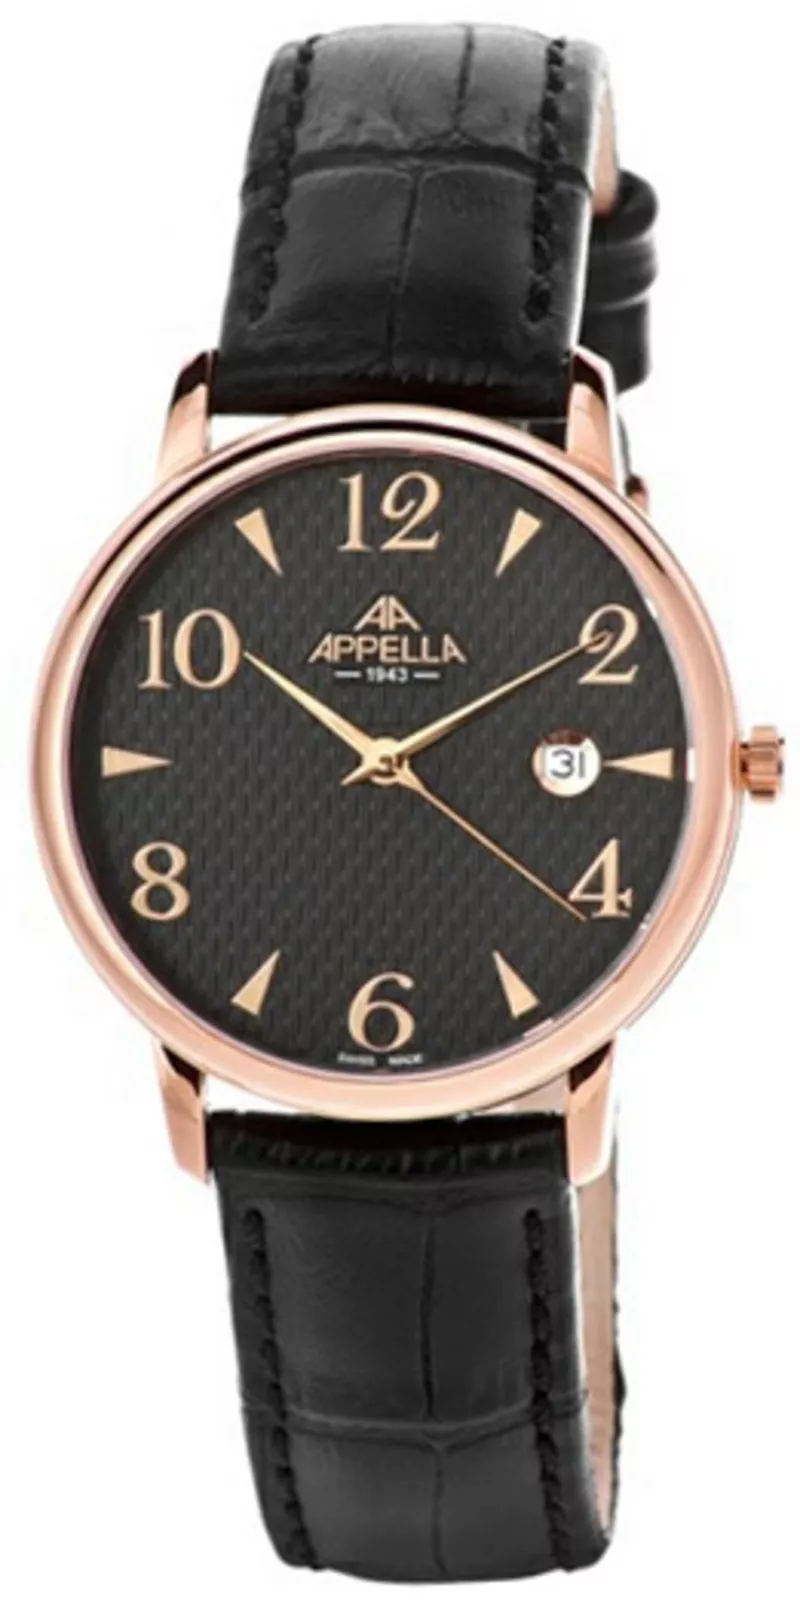 Часы Appella 4303-4014